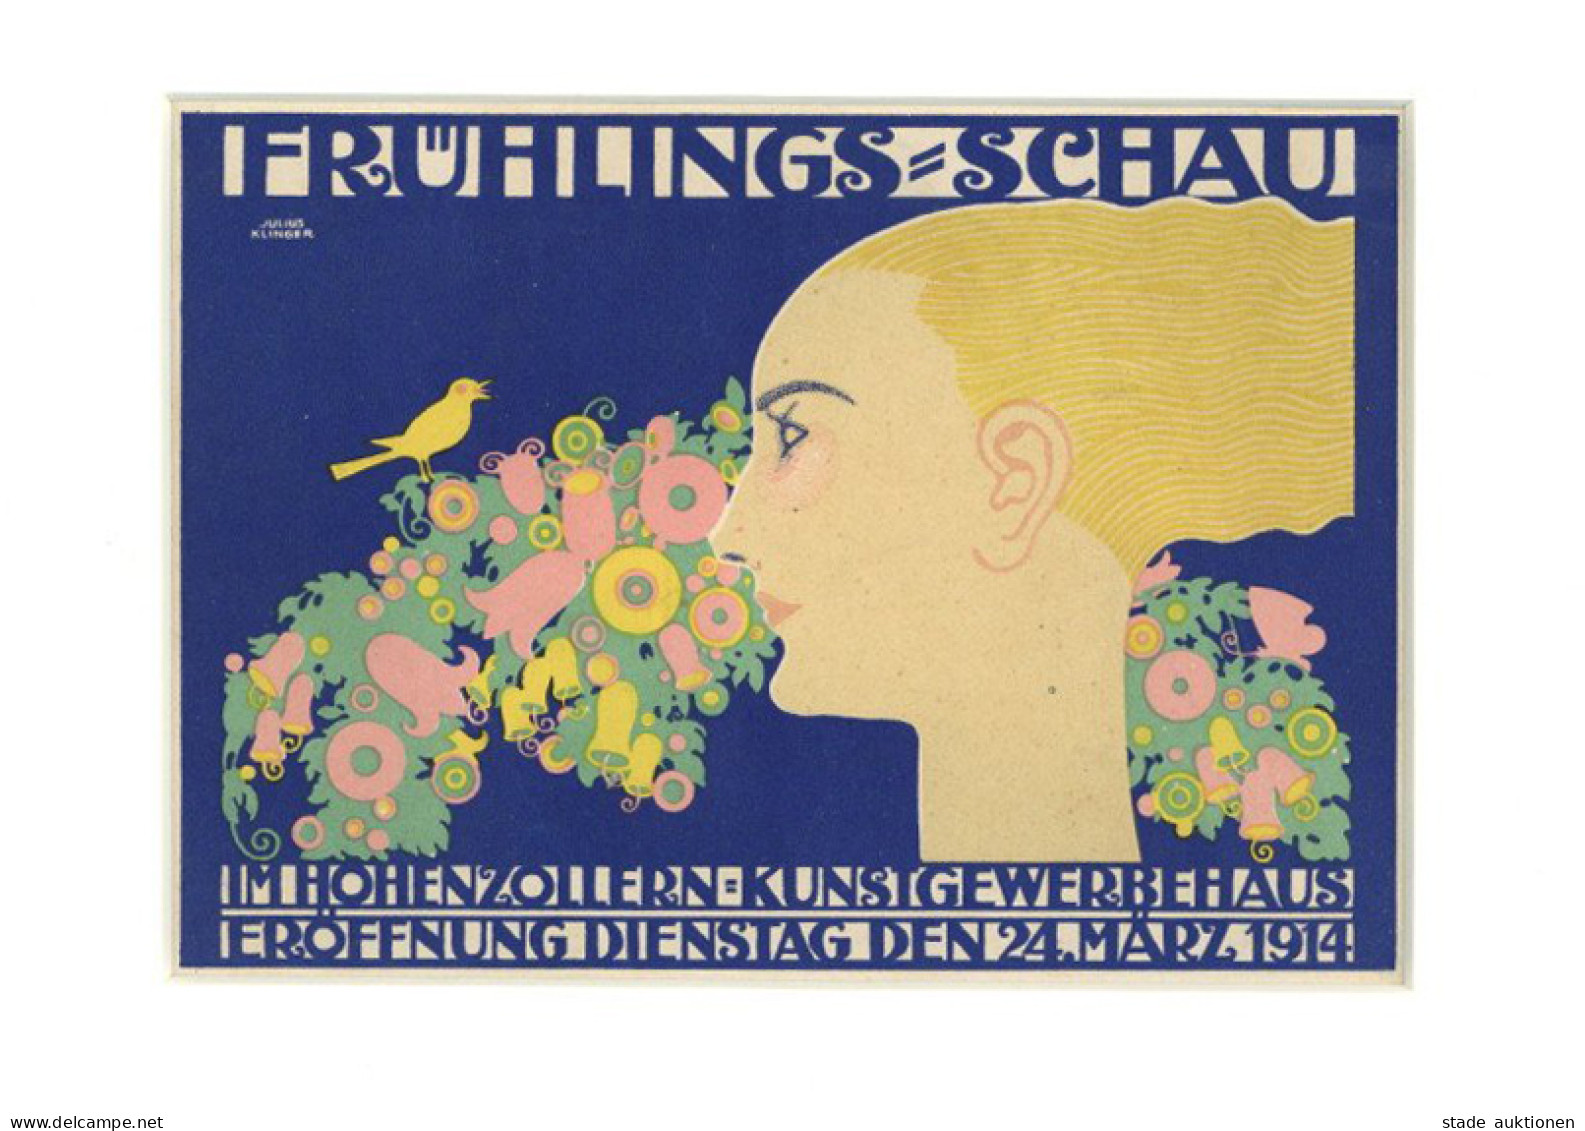 Werbung Kleinplakat Frühlings-Schau Im Hohenzollern Kunstgewerbehaus 24. März 1914 I-II Publicite - Advertising